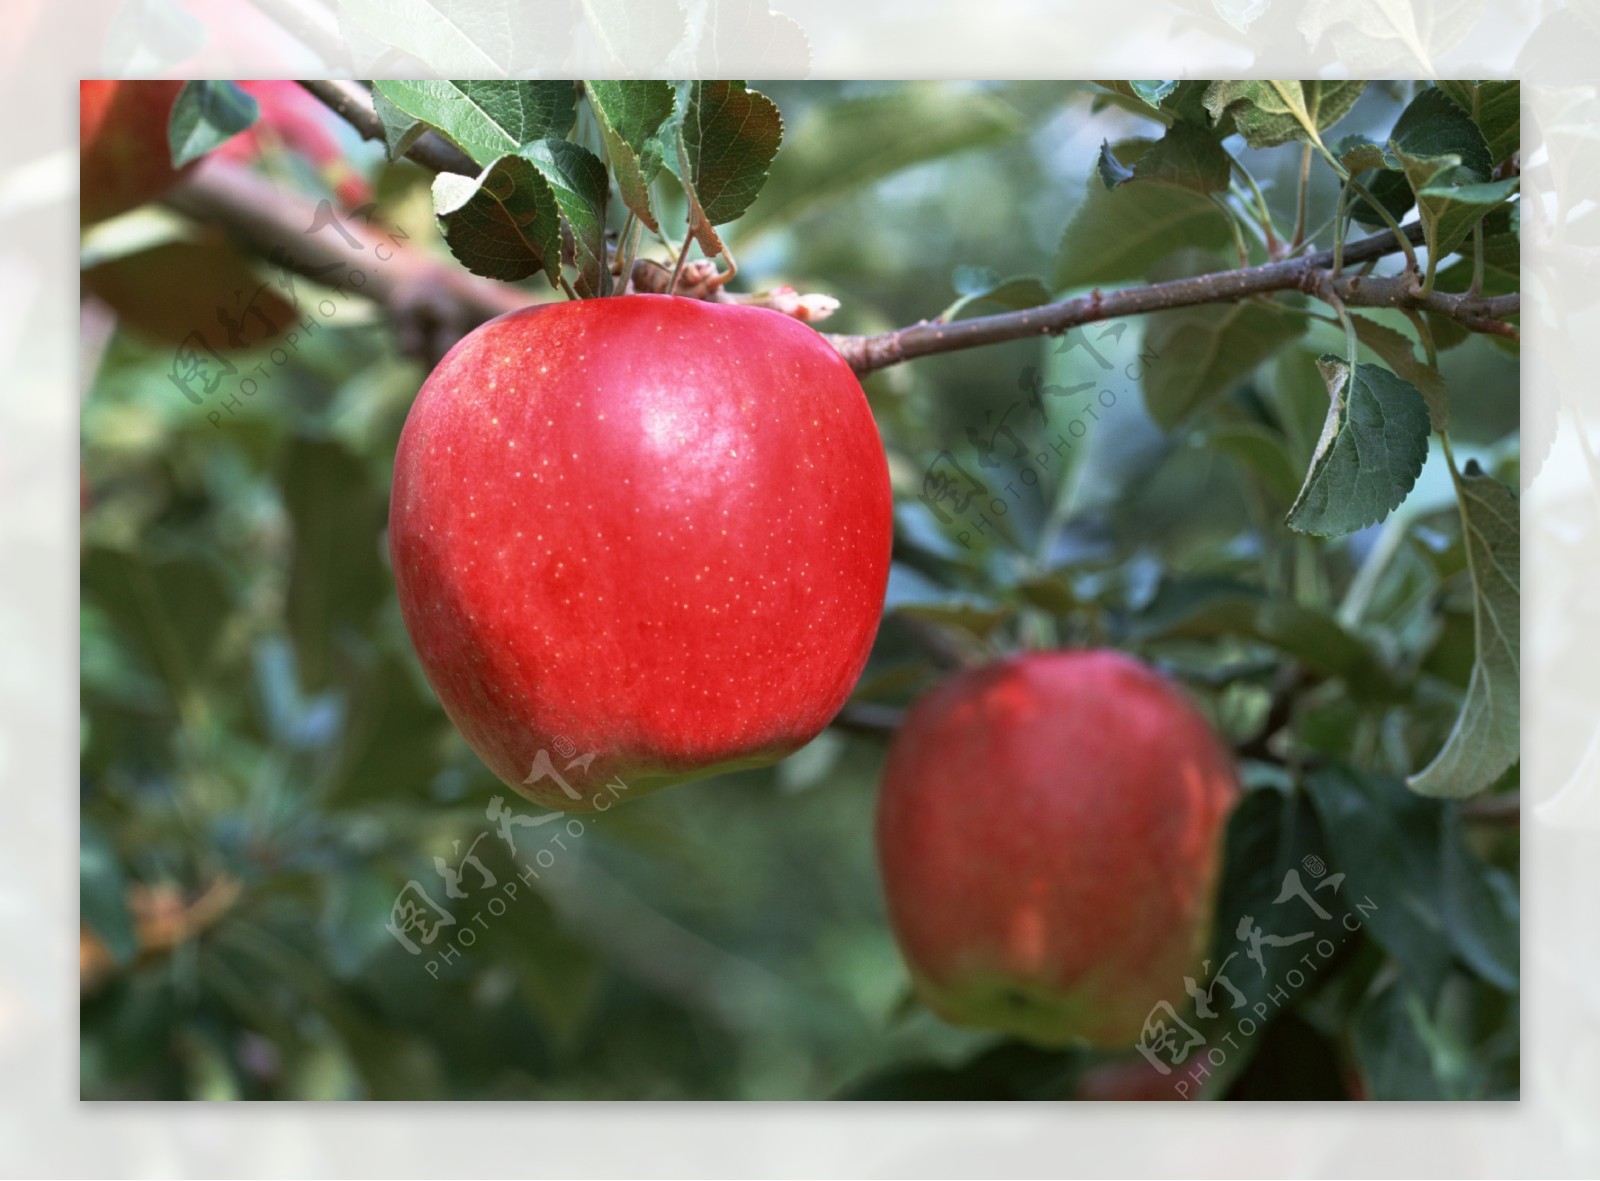 苹果采摘园枝头上的红苹果